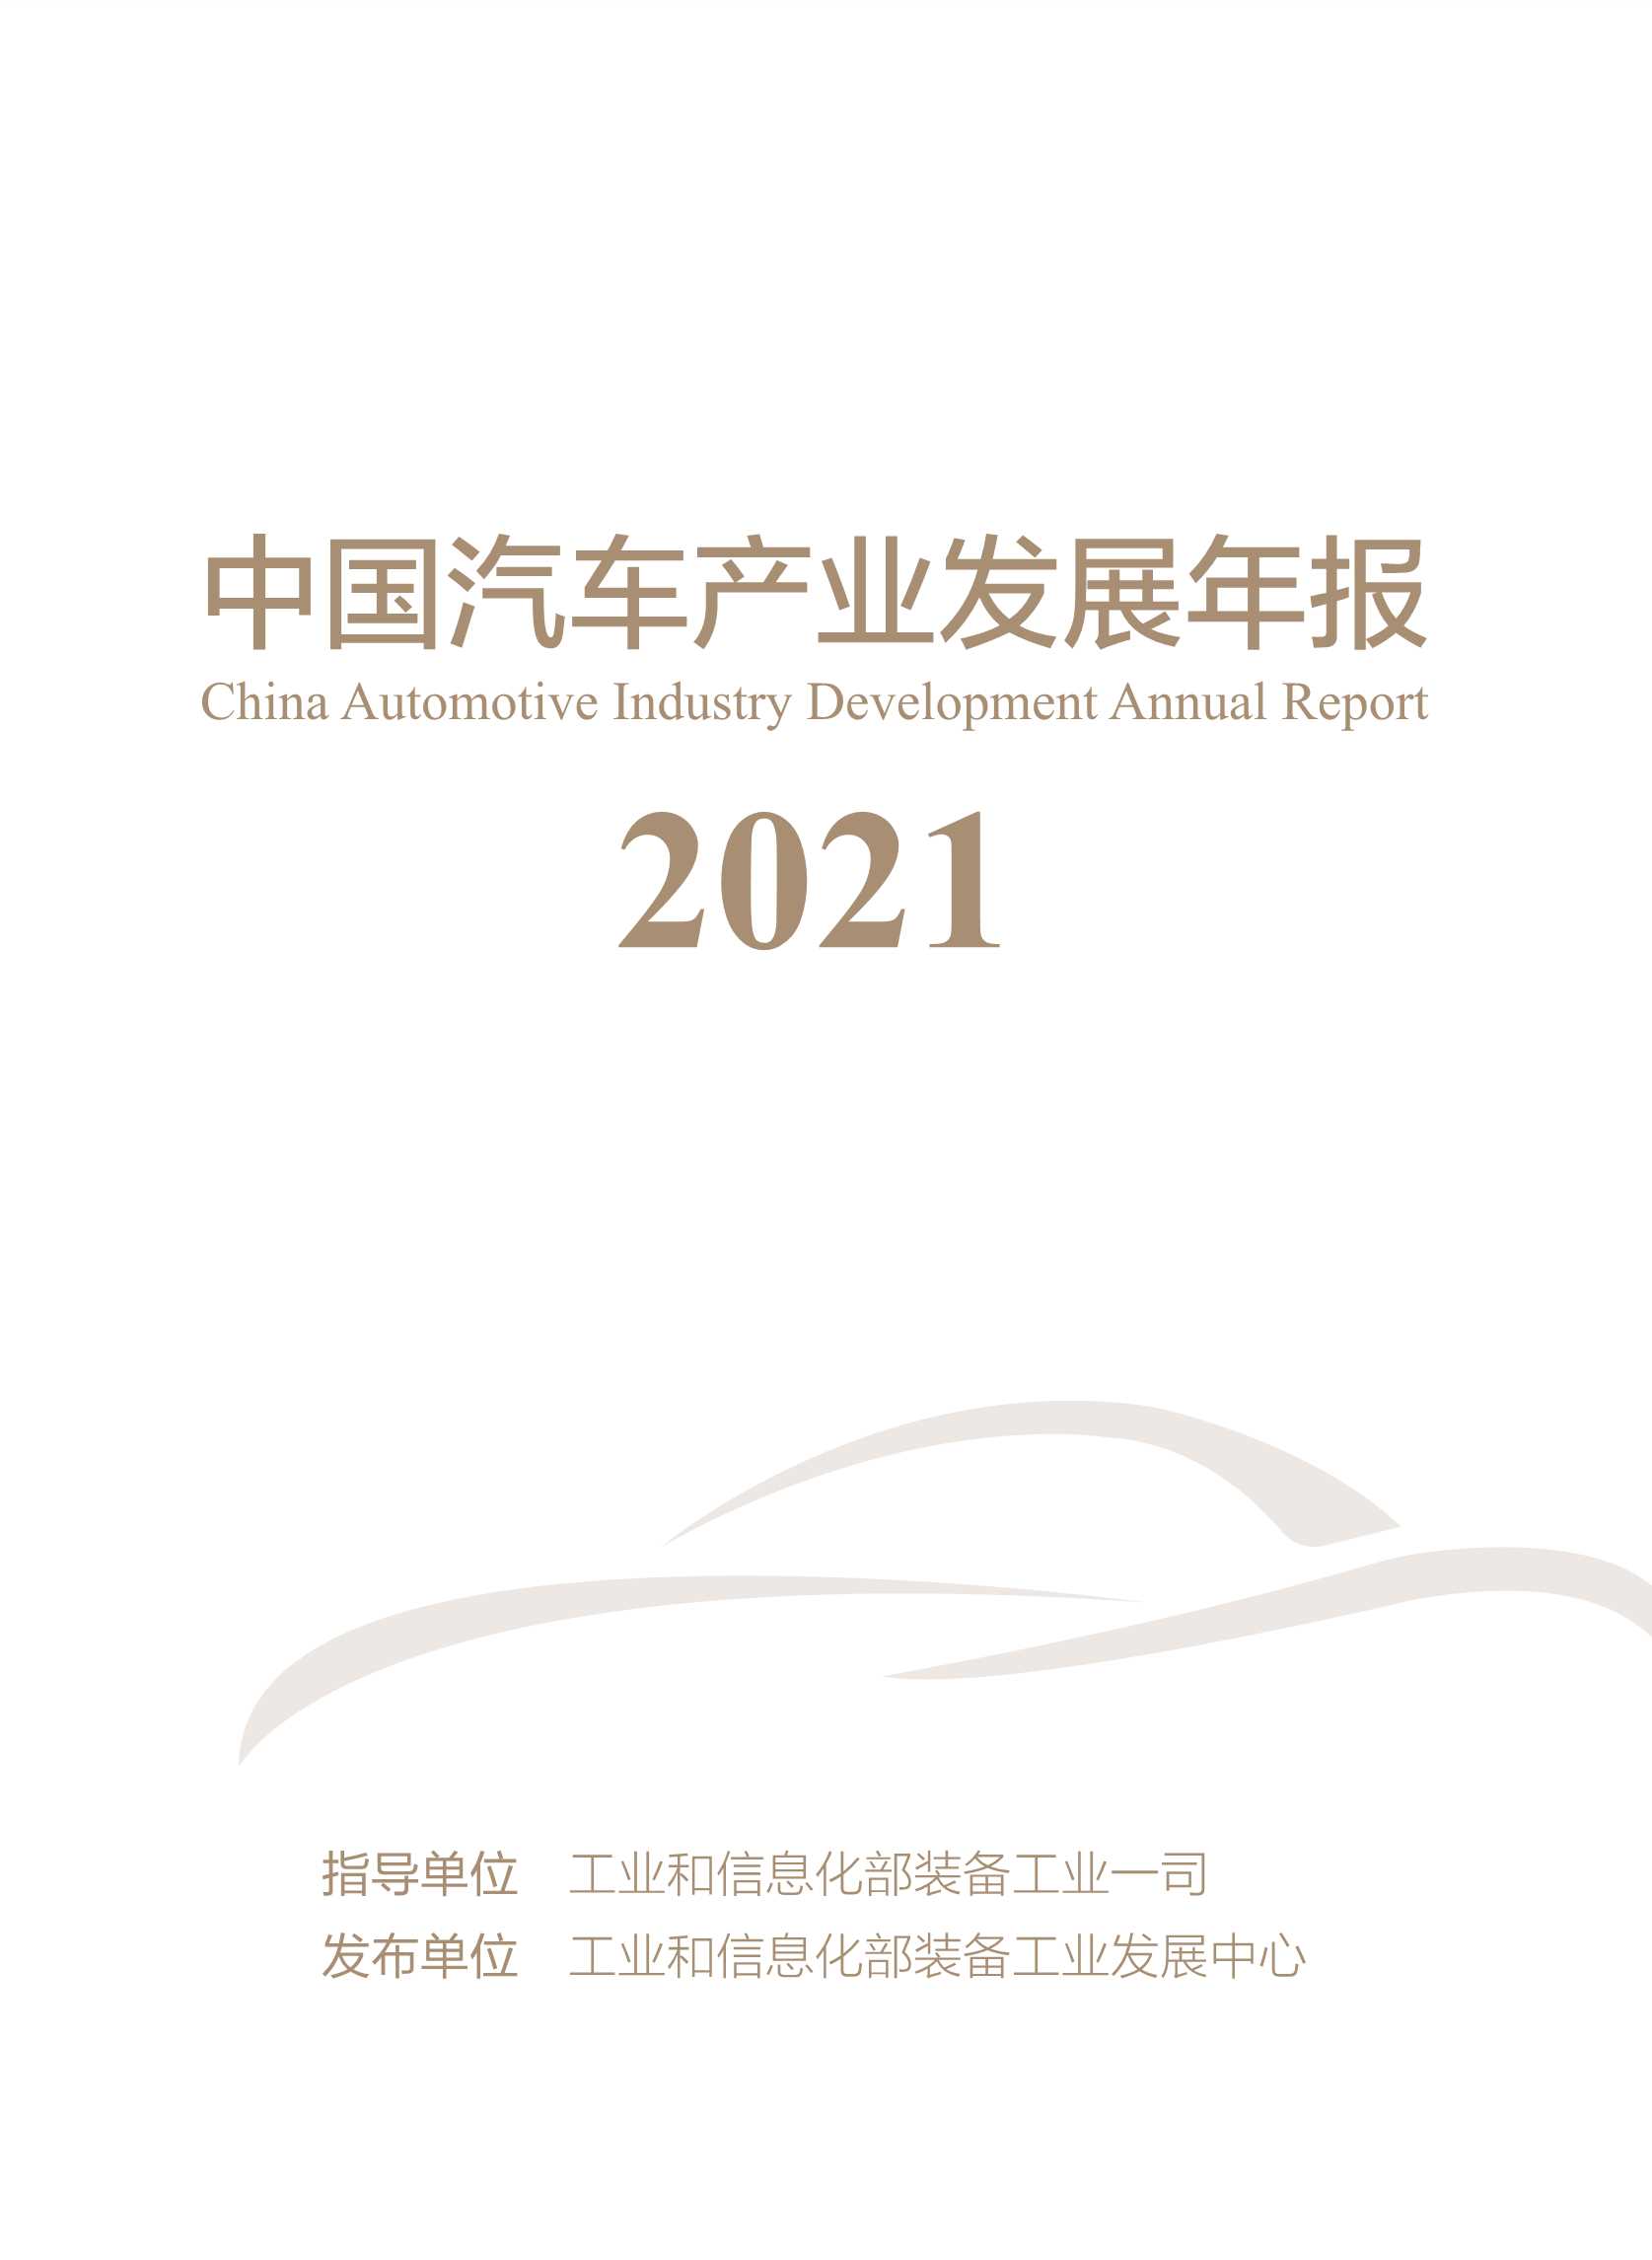 工业和信息化部-中国汽车产业发展年报-2021.10-82页